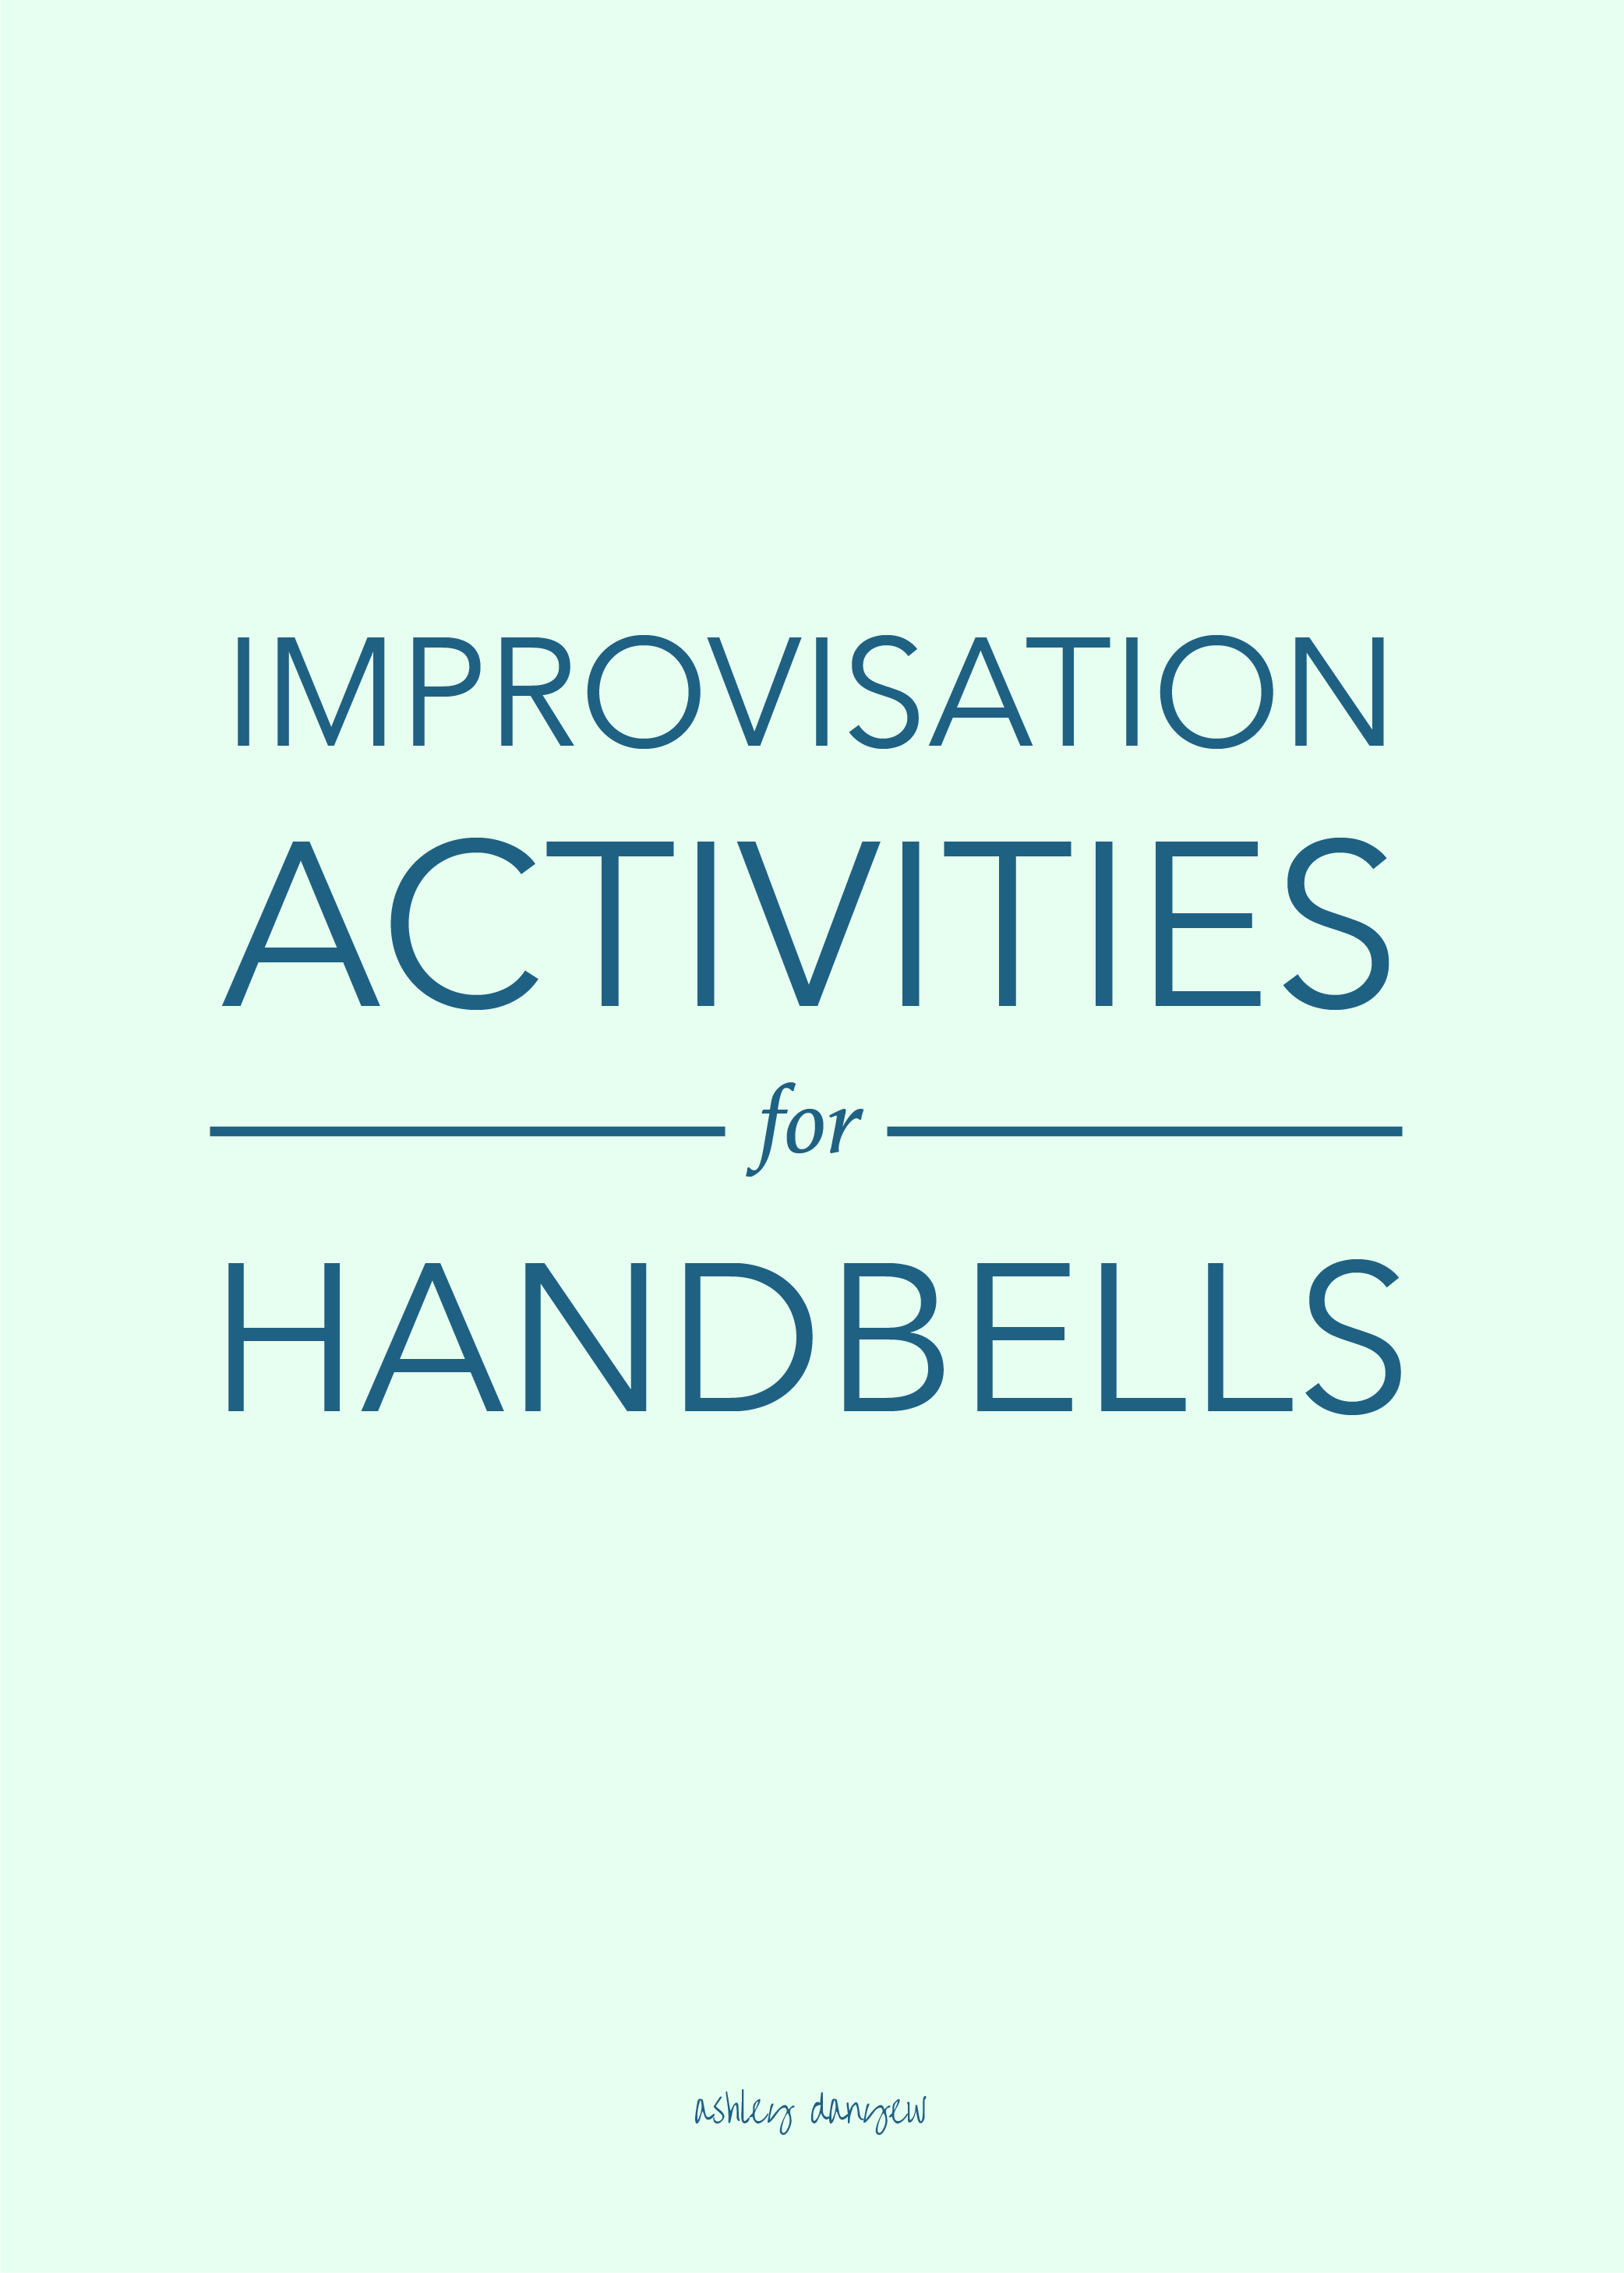 Copy of Improvisation Activities for Handbells